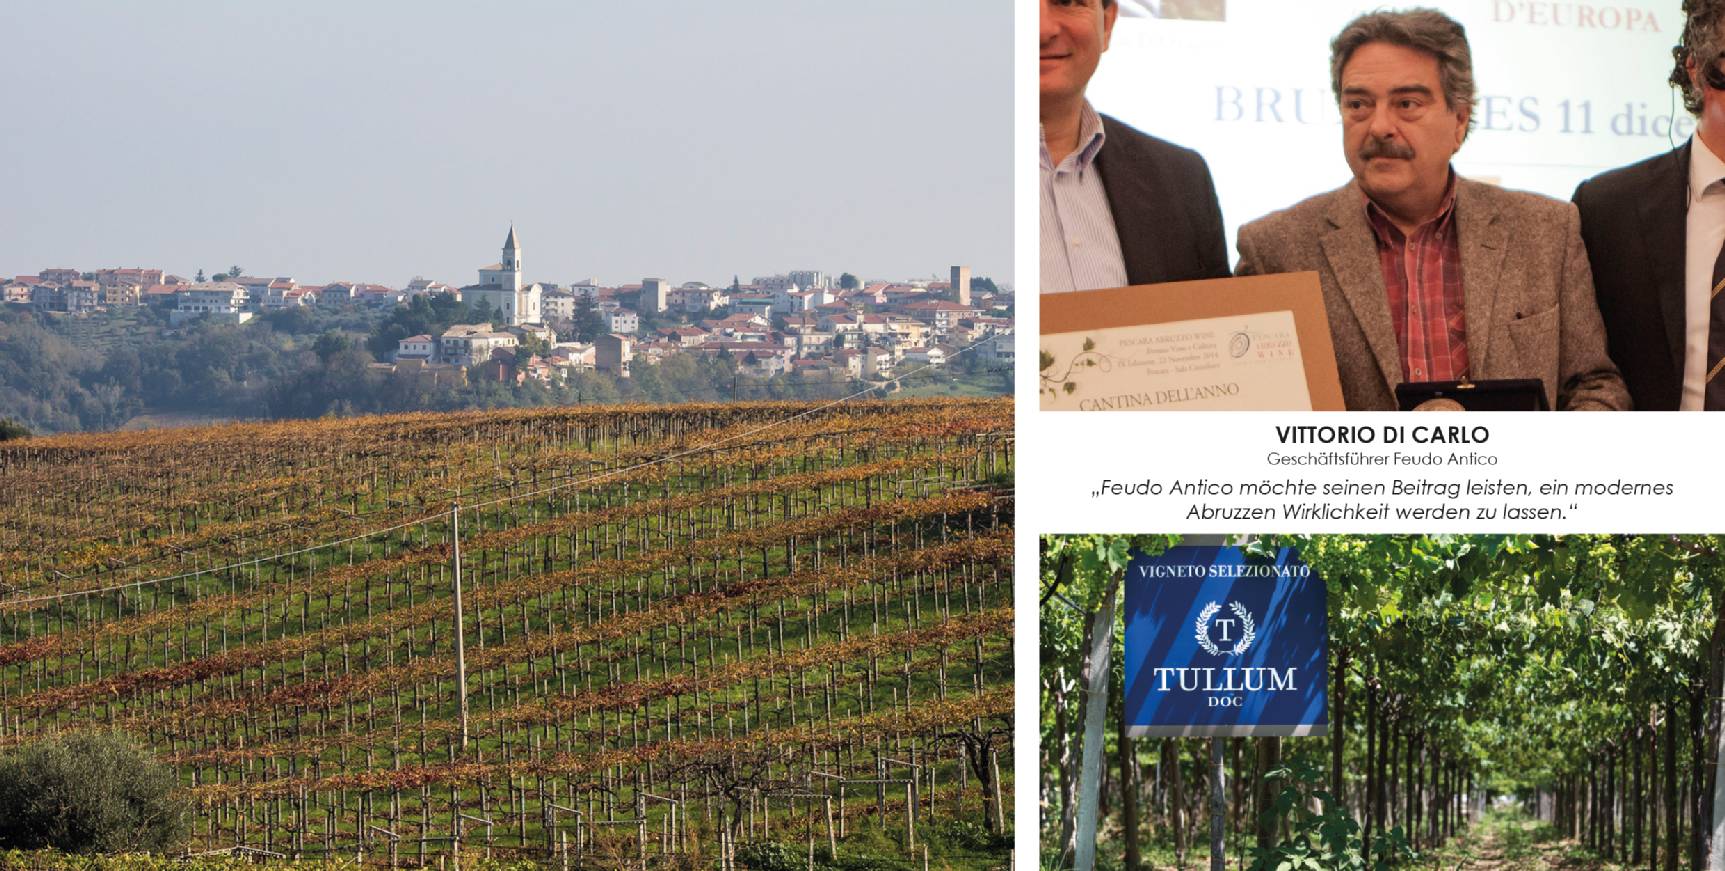 Wir führen auch Weine des kleinsten DOC Weinbaugebiets Tullum in unserer Vinothek in Bamberg.